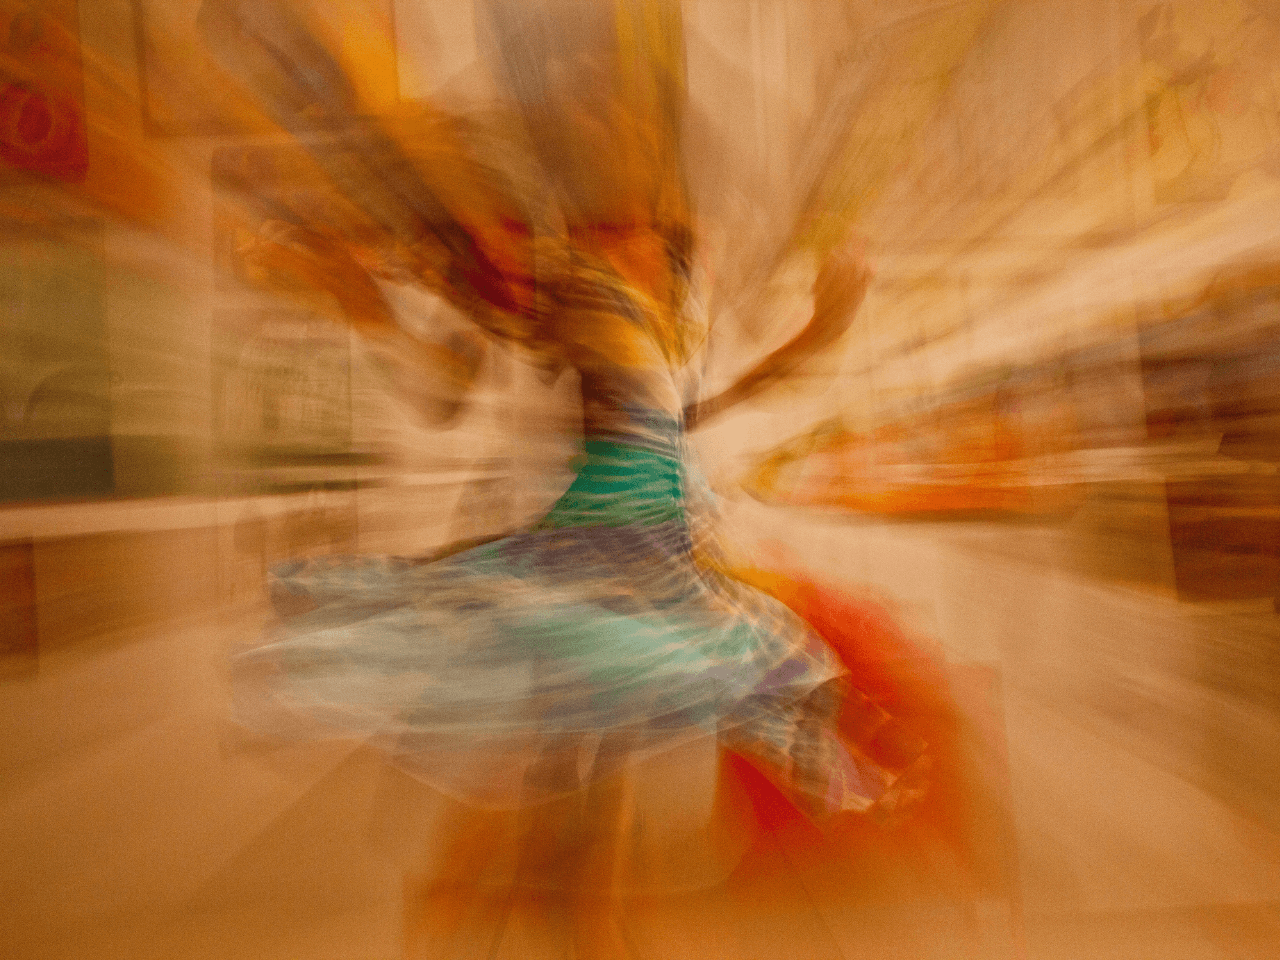 Abstrakt bild på en person som dansar.